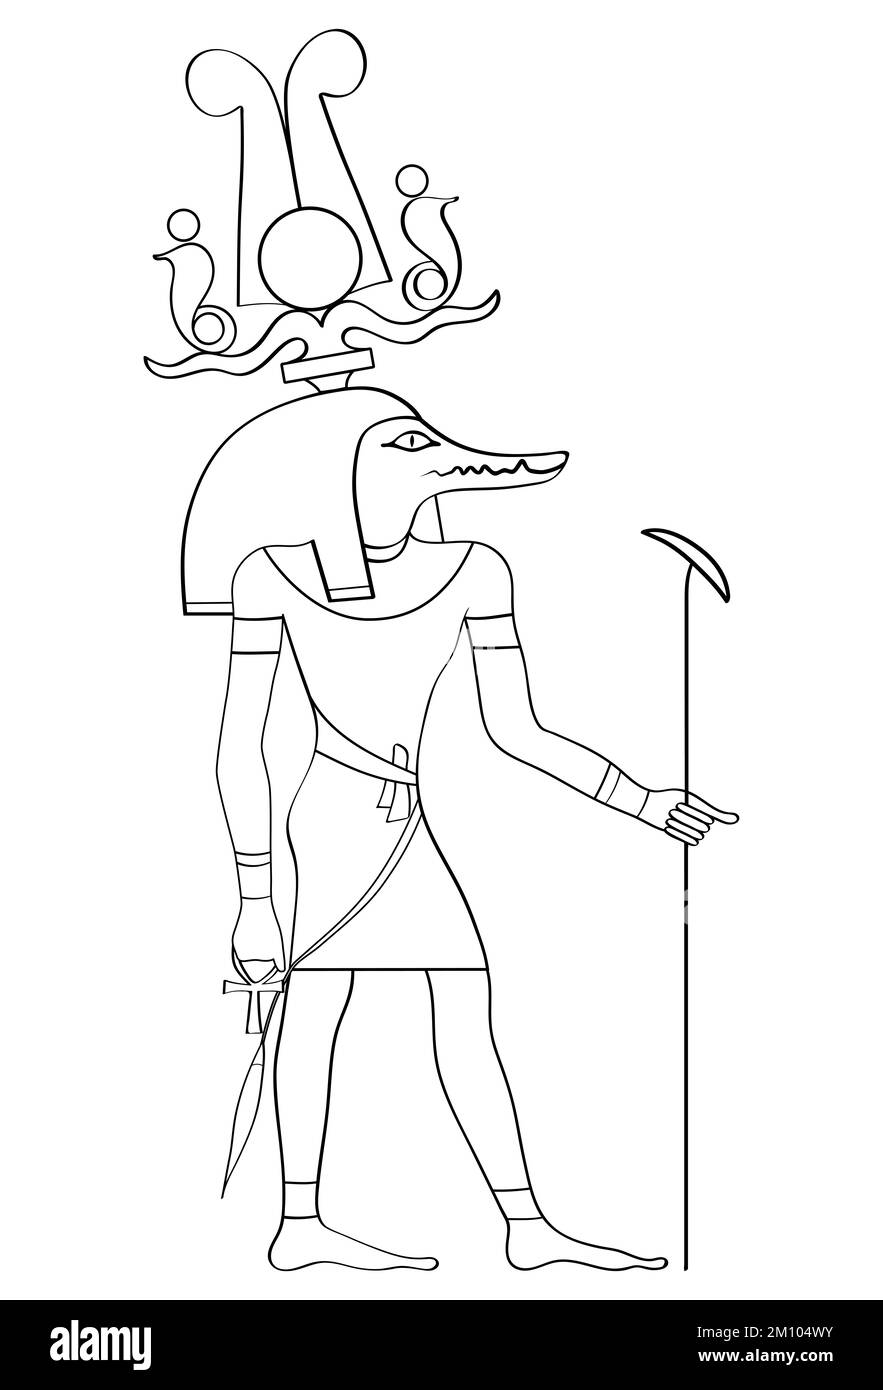 Sobek - Krokodilgott der Stärke und Macht im alten Ägypten geht es bei einigen Mythen um Sobek als den Schöpfer der Welt Stockfoto